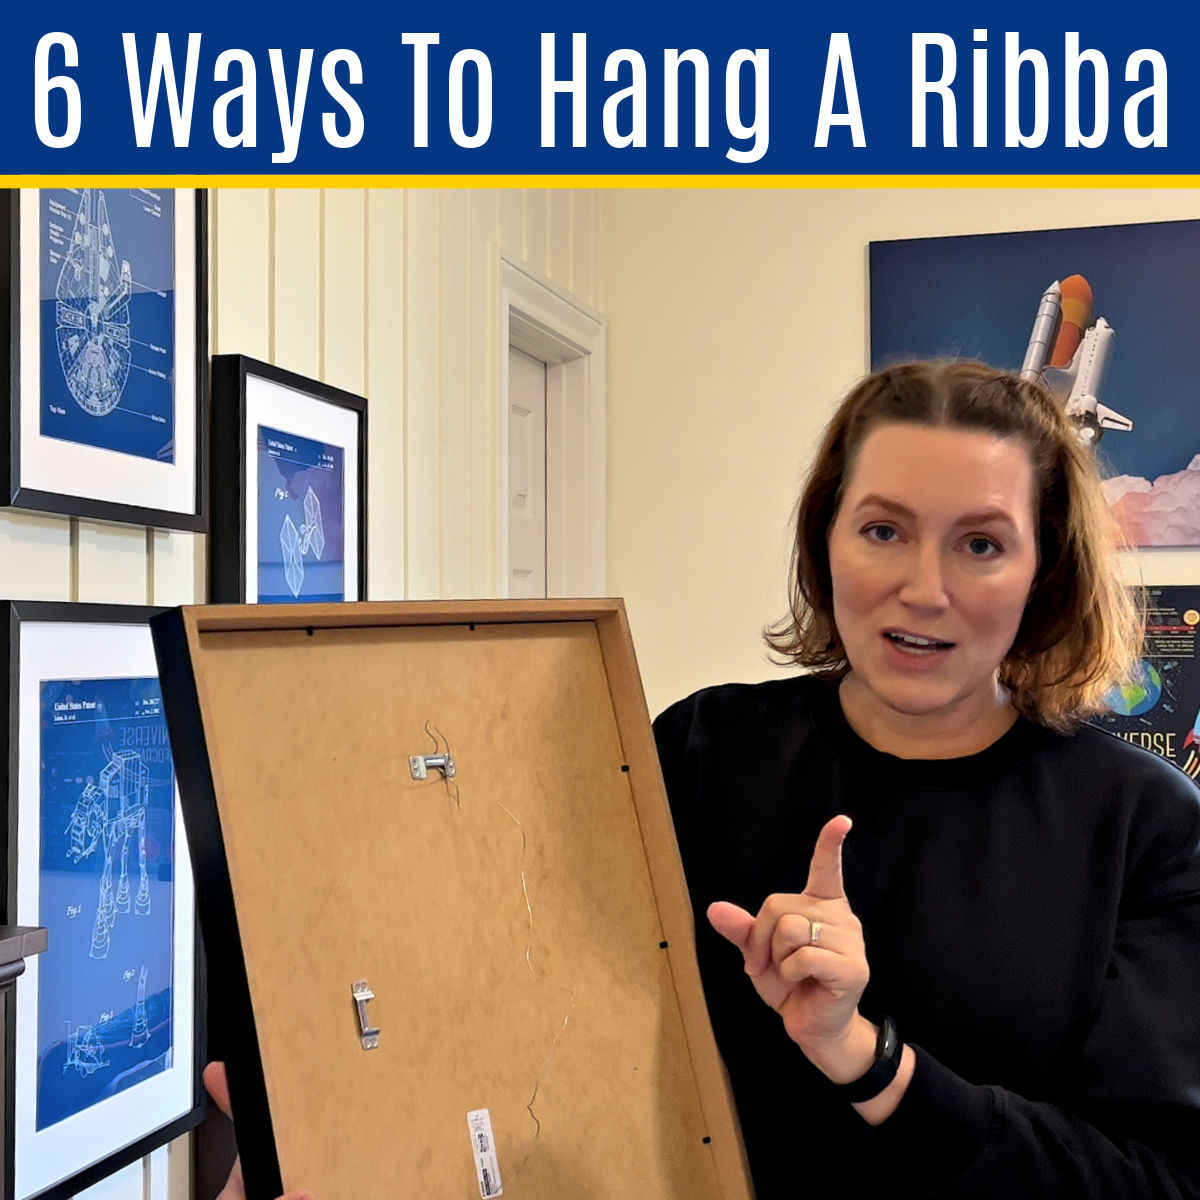 RIBBA Frame, black, 8x10 - IKEA